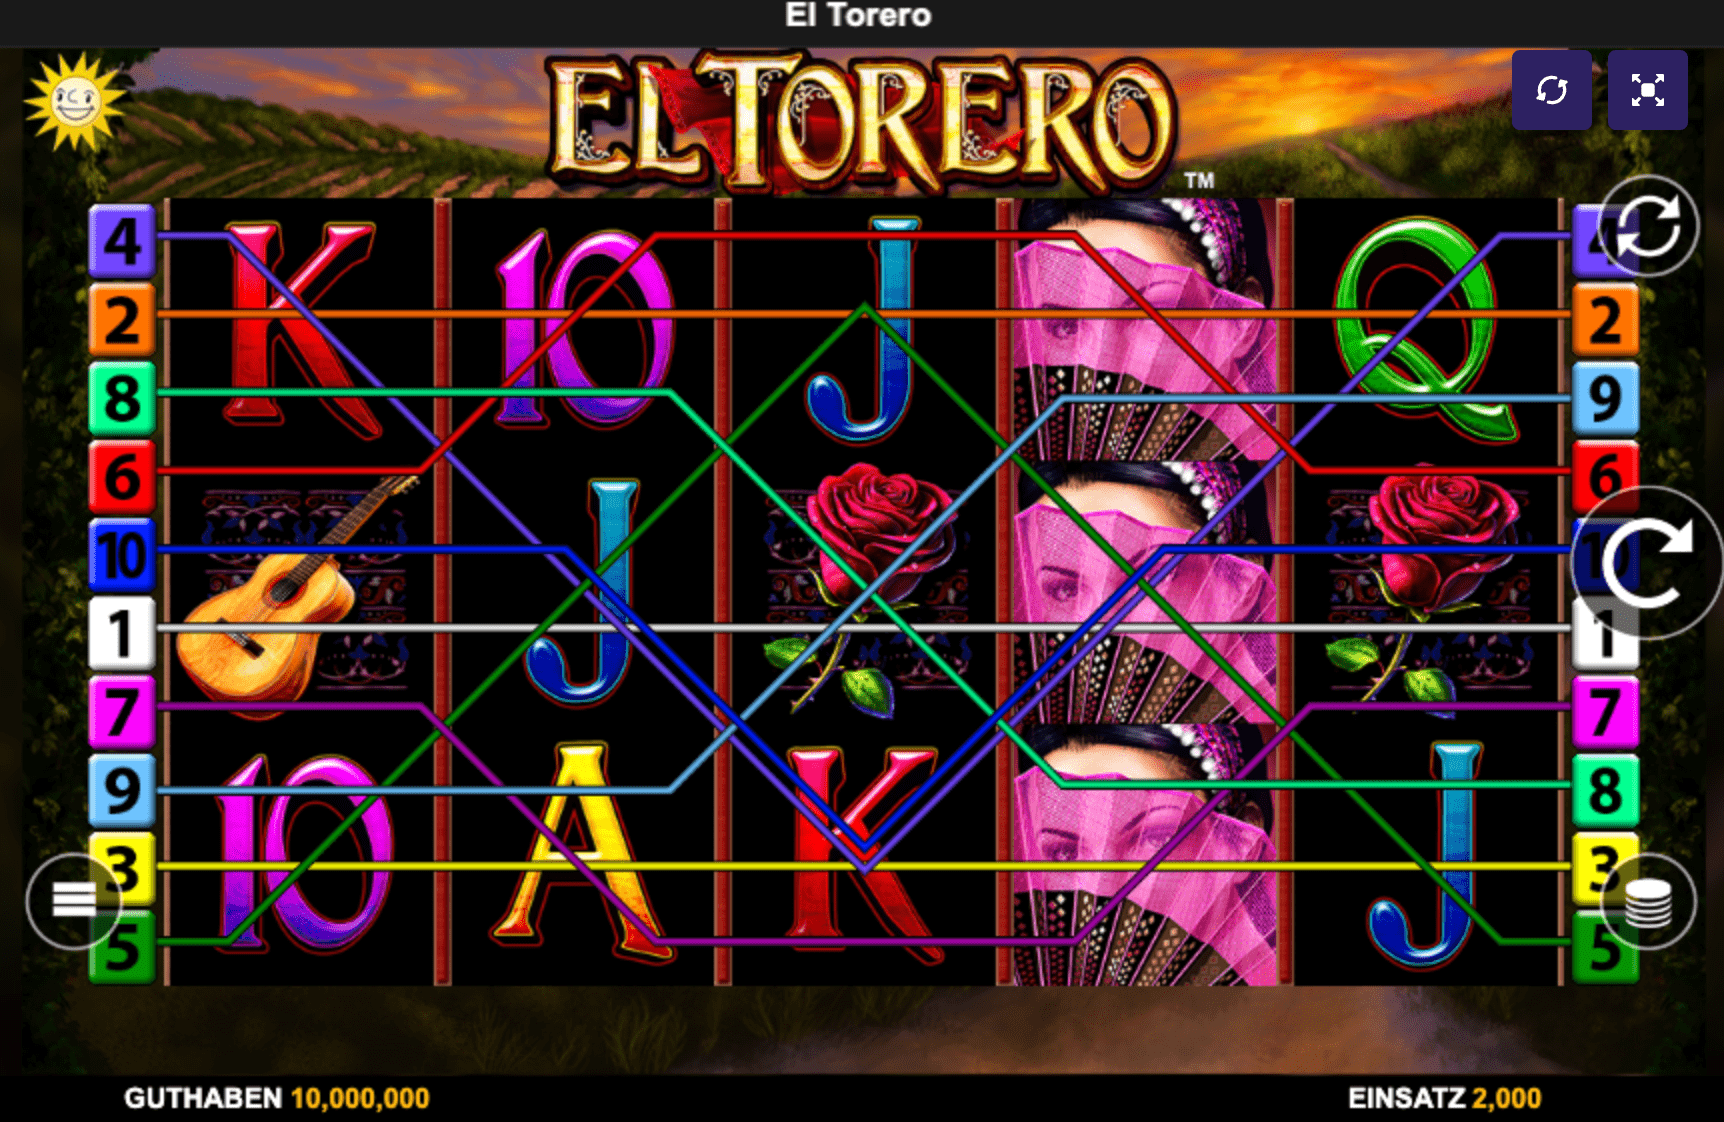 El Torero slot machine